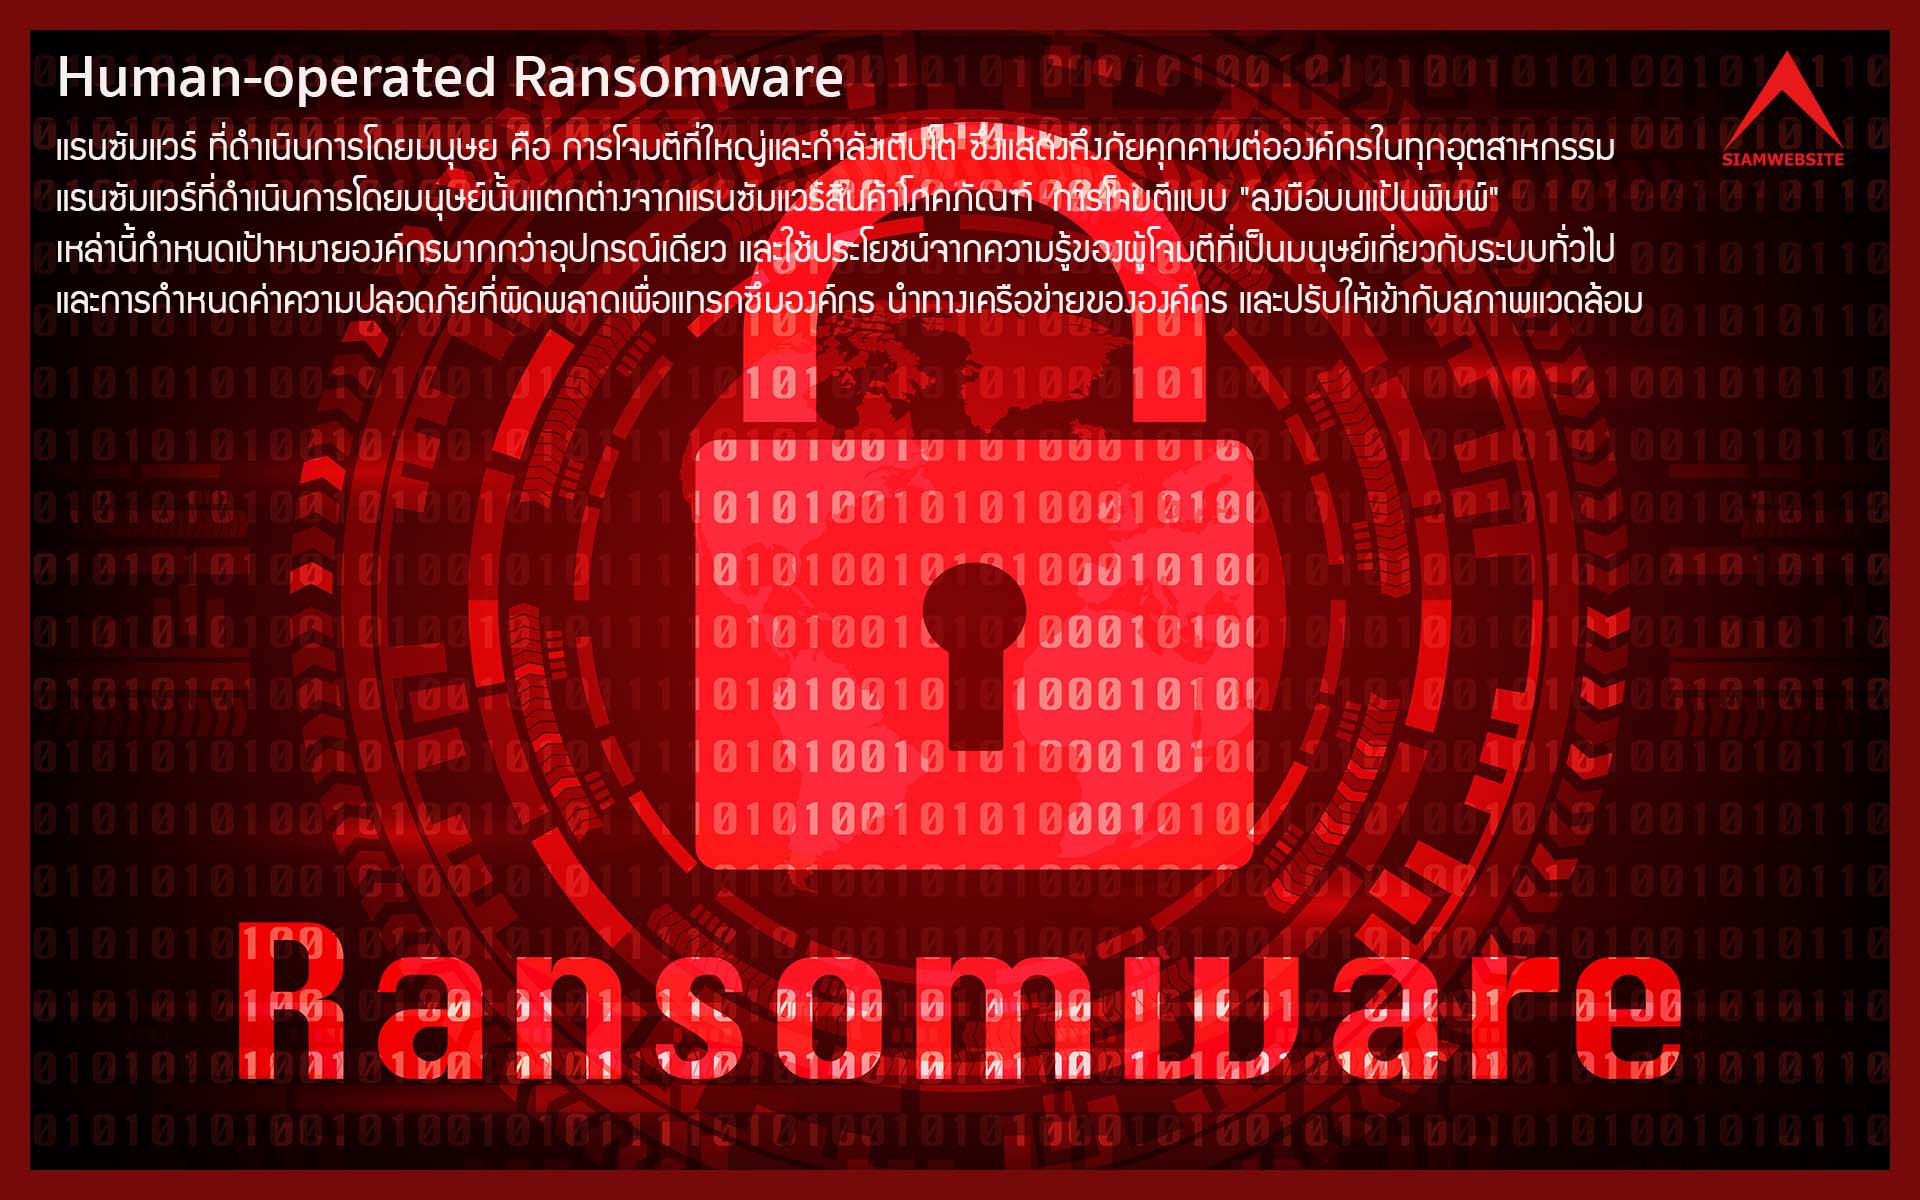 รับทําเว็บไซต์ เว็บขยายสายงาน Human-operated Ransomware - แรนซัมแวร์ ที่ดำเนินการโดยมนุษย์ | TTT-WEBSITE 